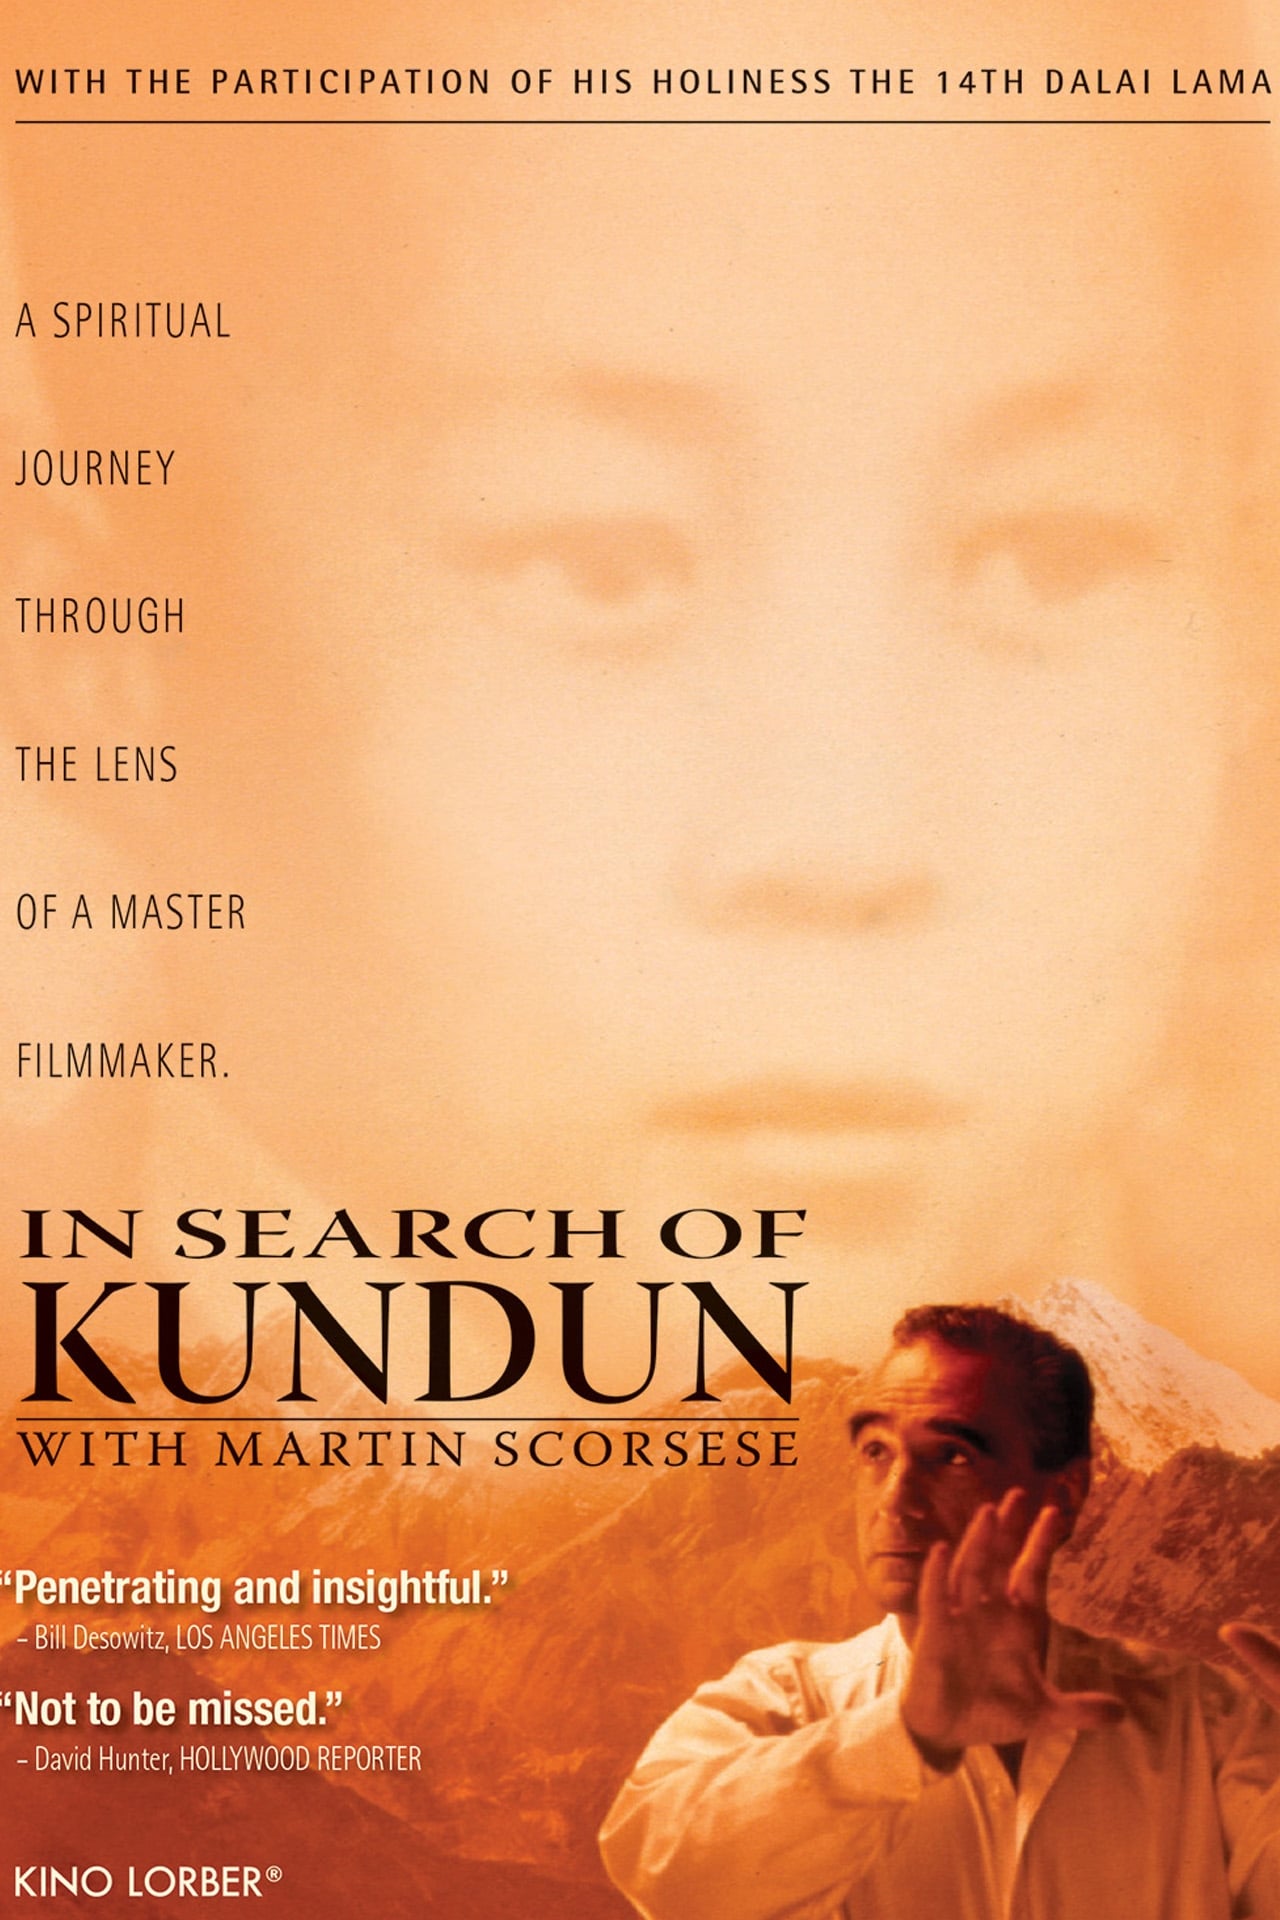 In Search of Kundun with Martin Scorsese